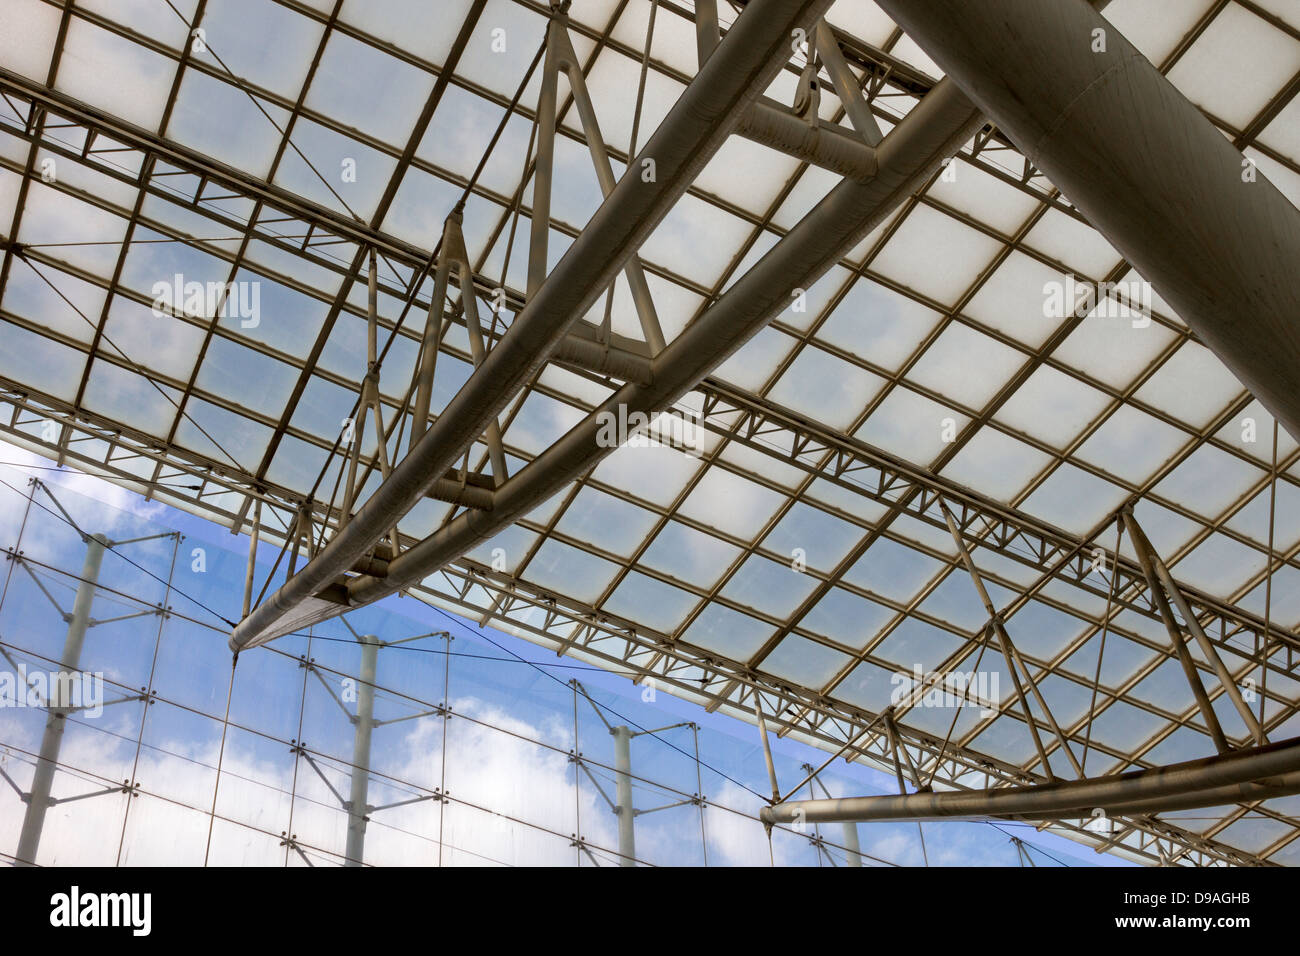 Latticework of translucent ceiling above Charles de Gaulle train station atrium in Paris, France Stock Photo